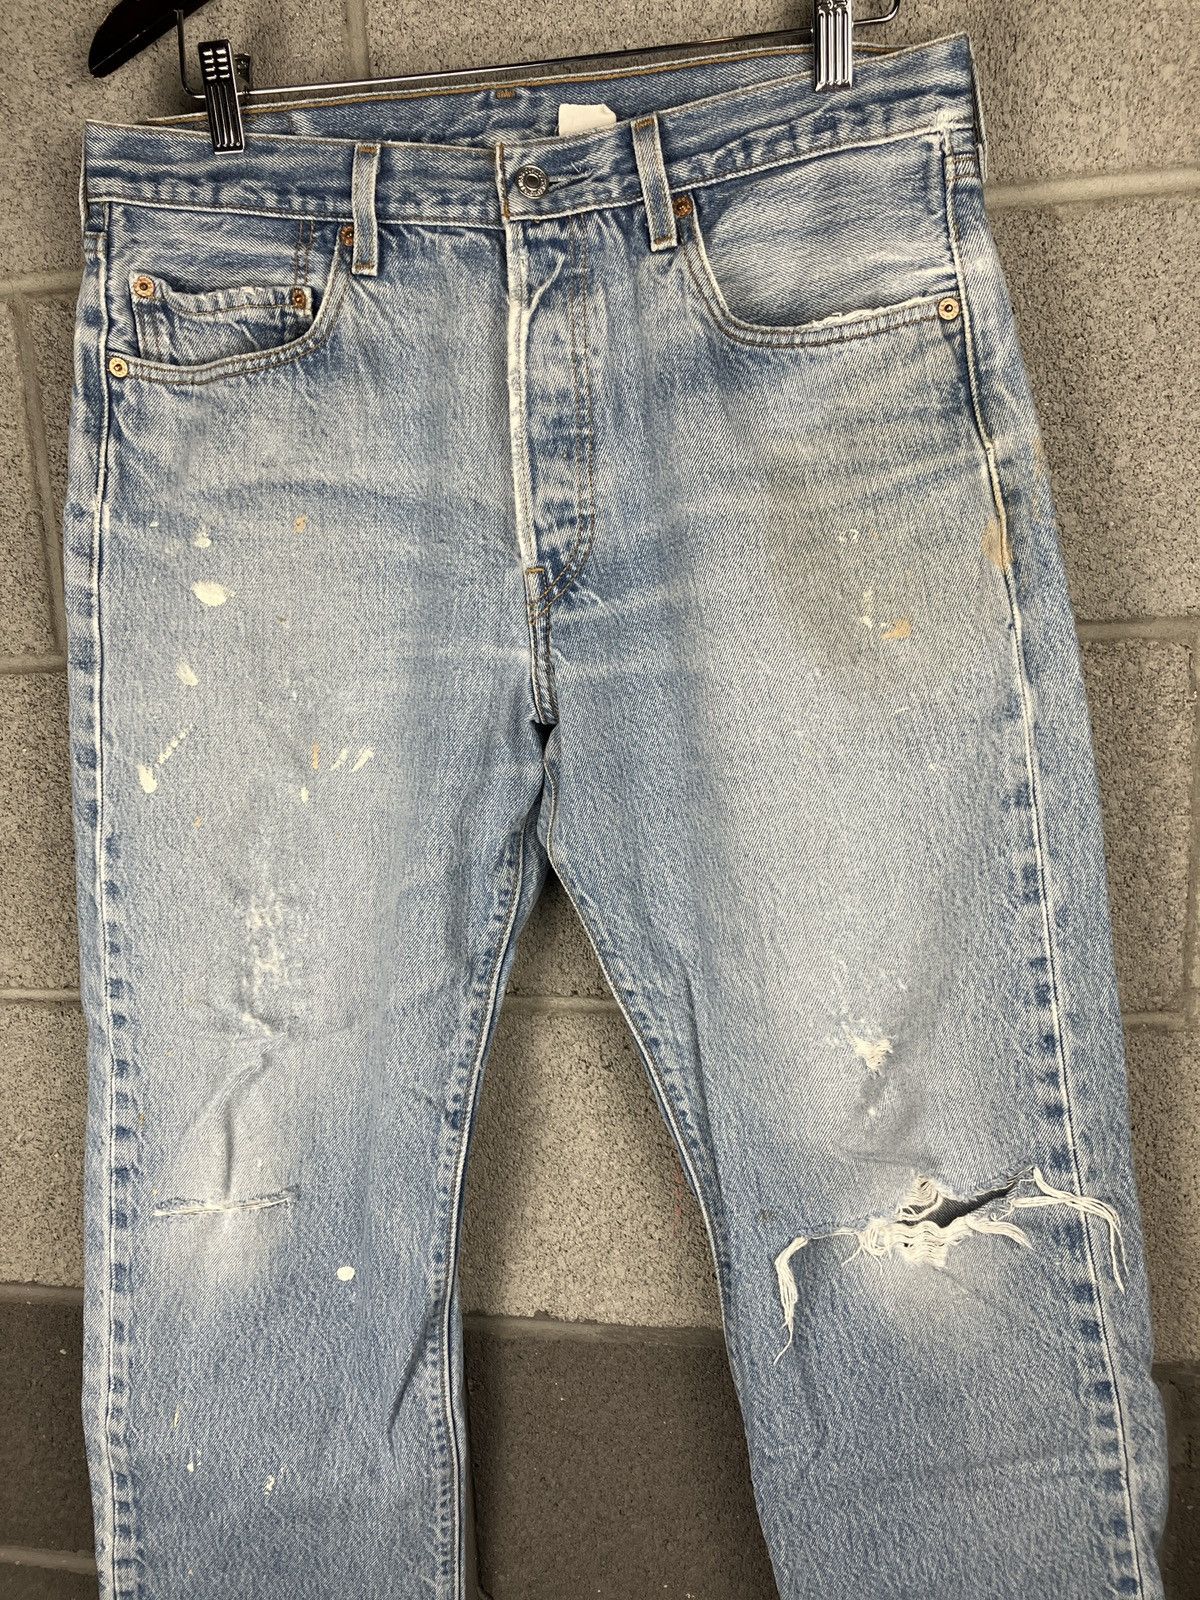 Vintage Vintage Levi’s 501 Distressed Painted Jeans 33 x 29 Size US 33 - 4 Thumbnail